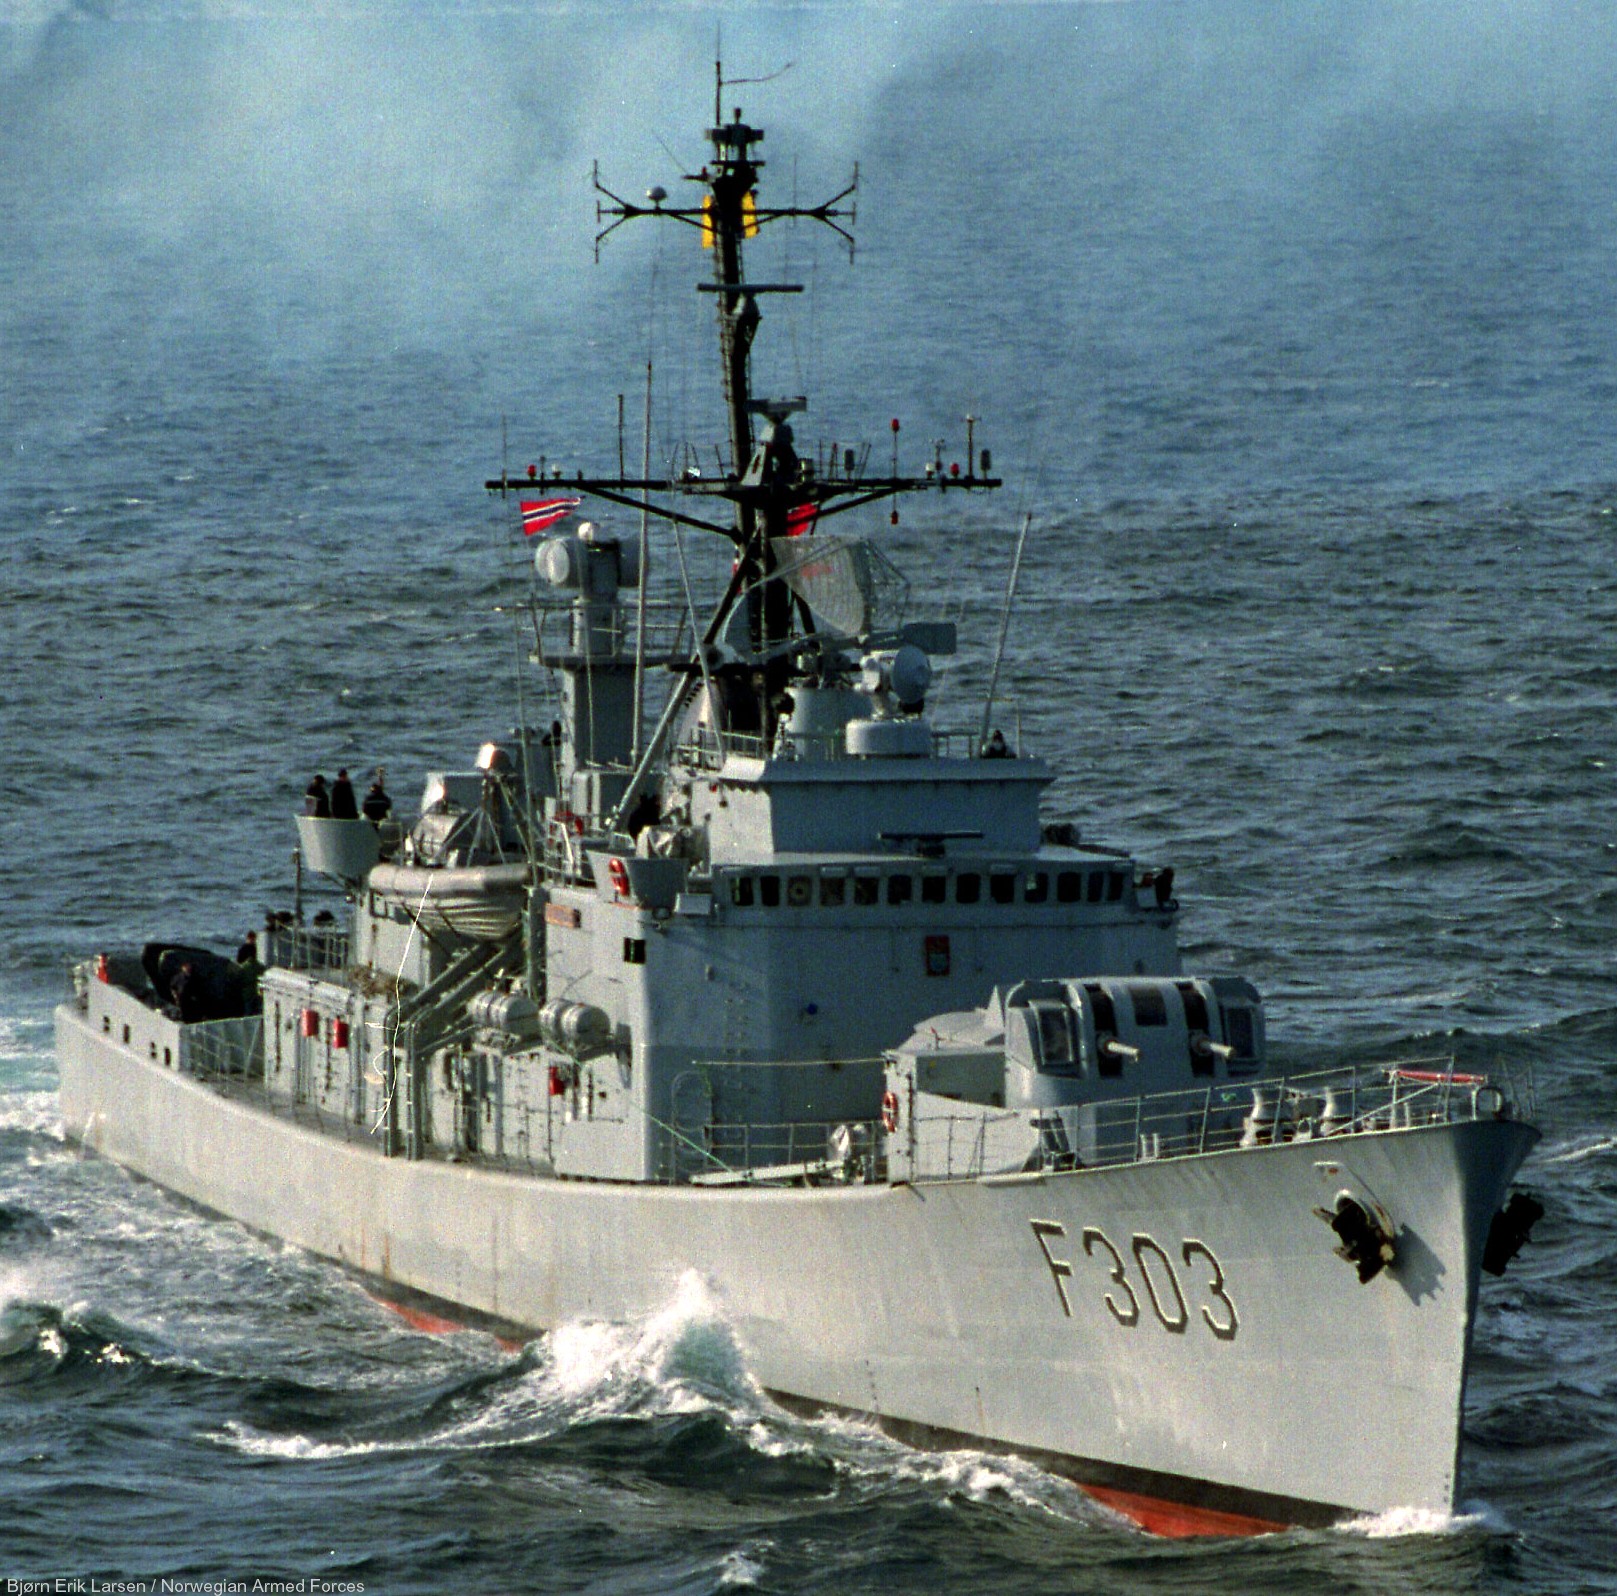 f-303 hnoms stavanger knm oslo class frigate royal norwegian navy sjoforsvaret 08